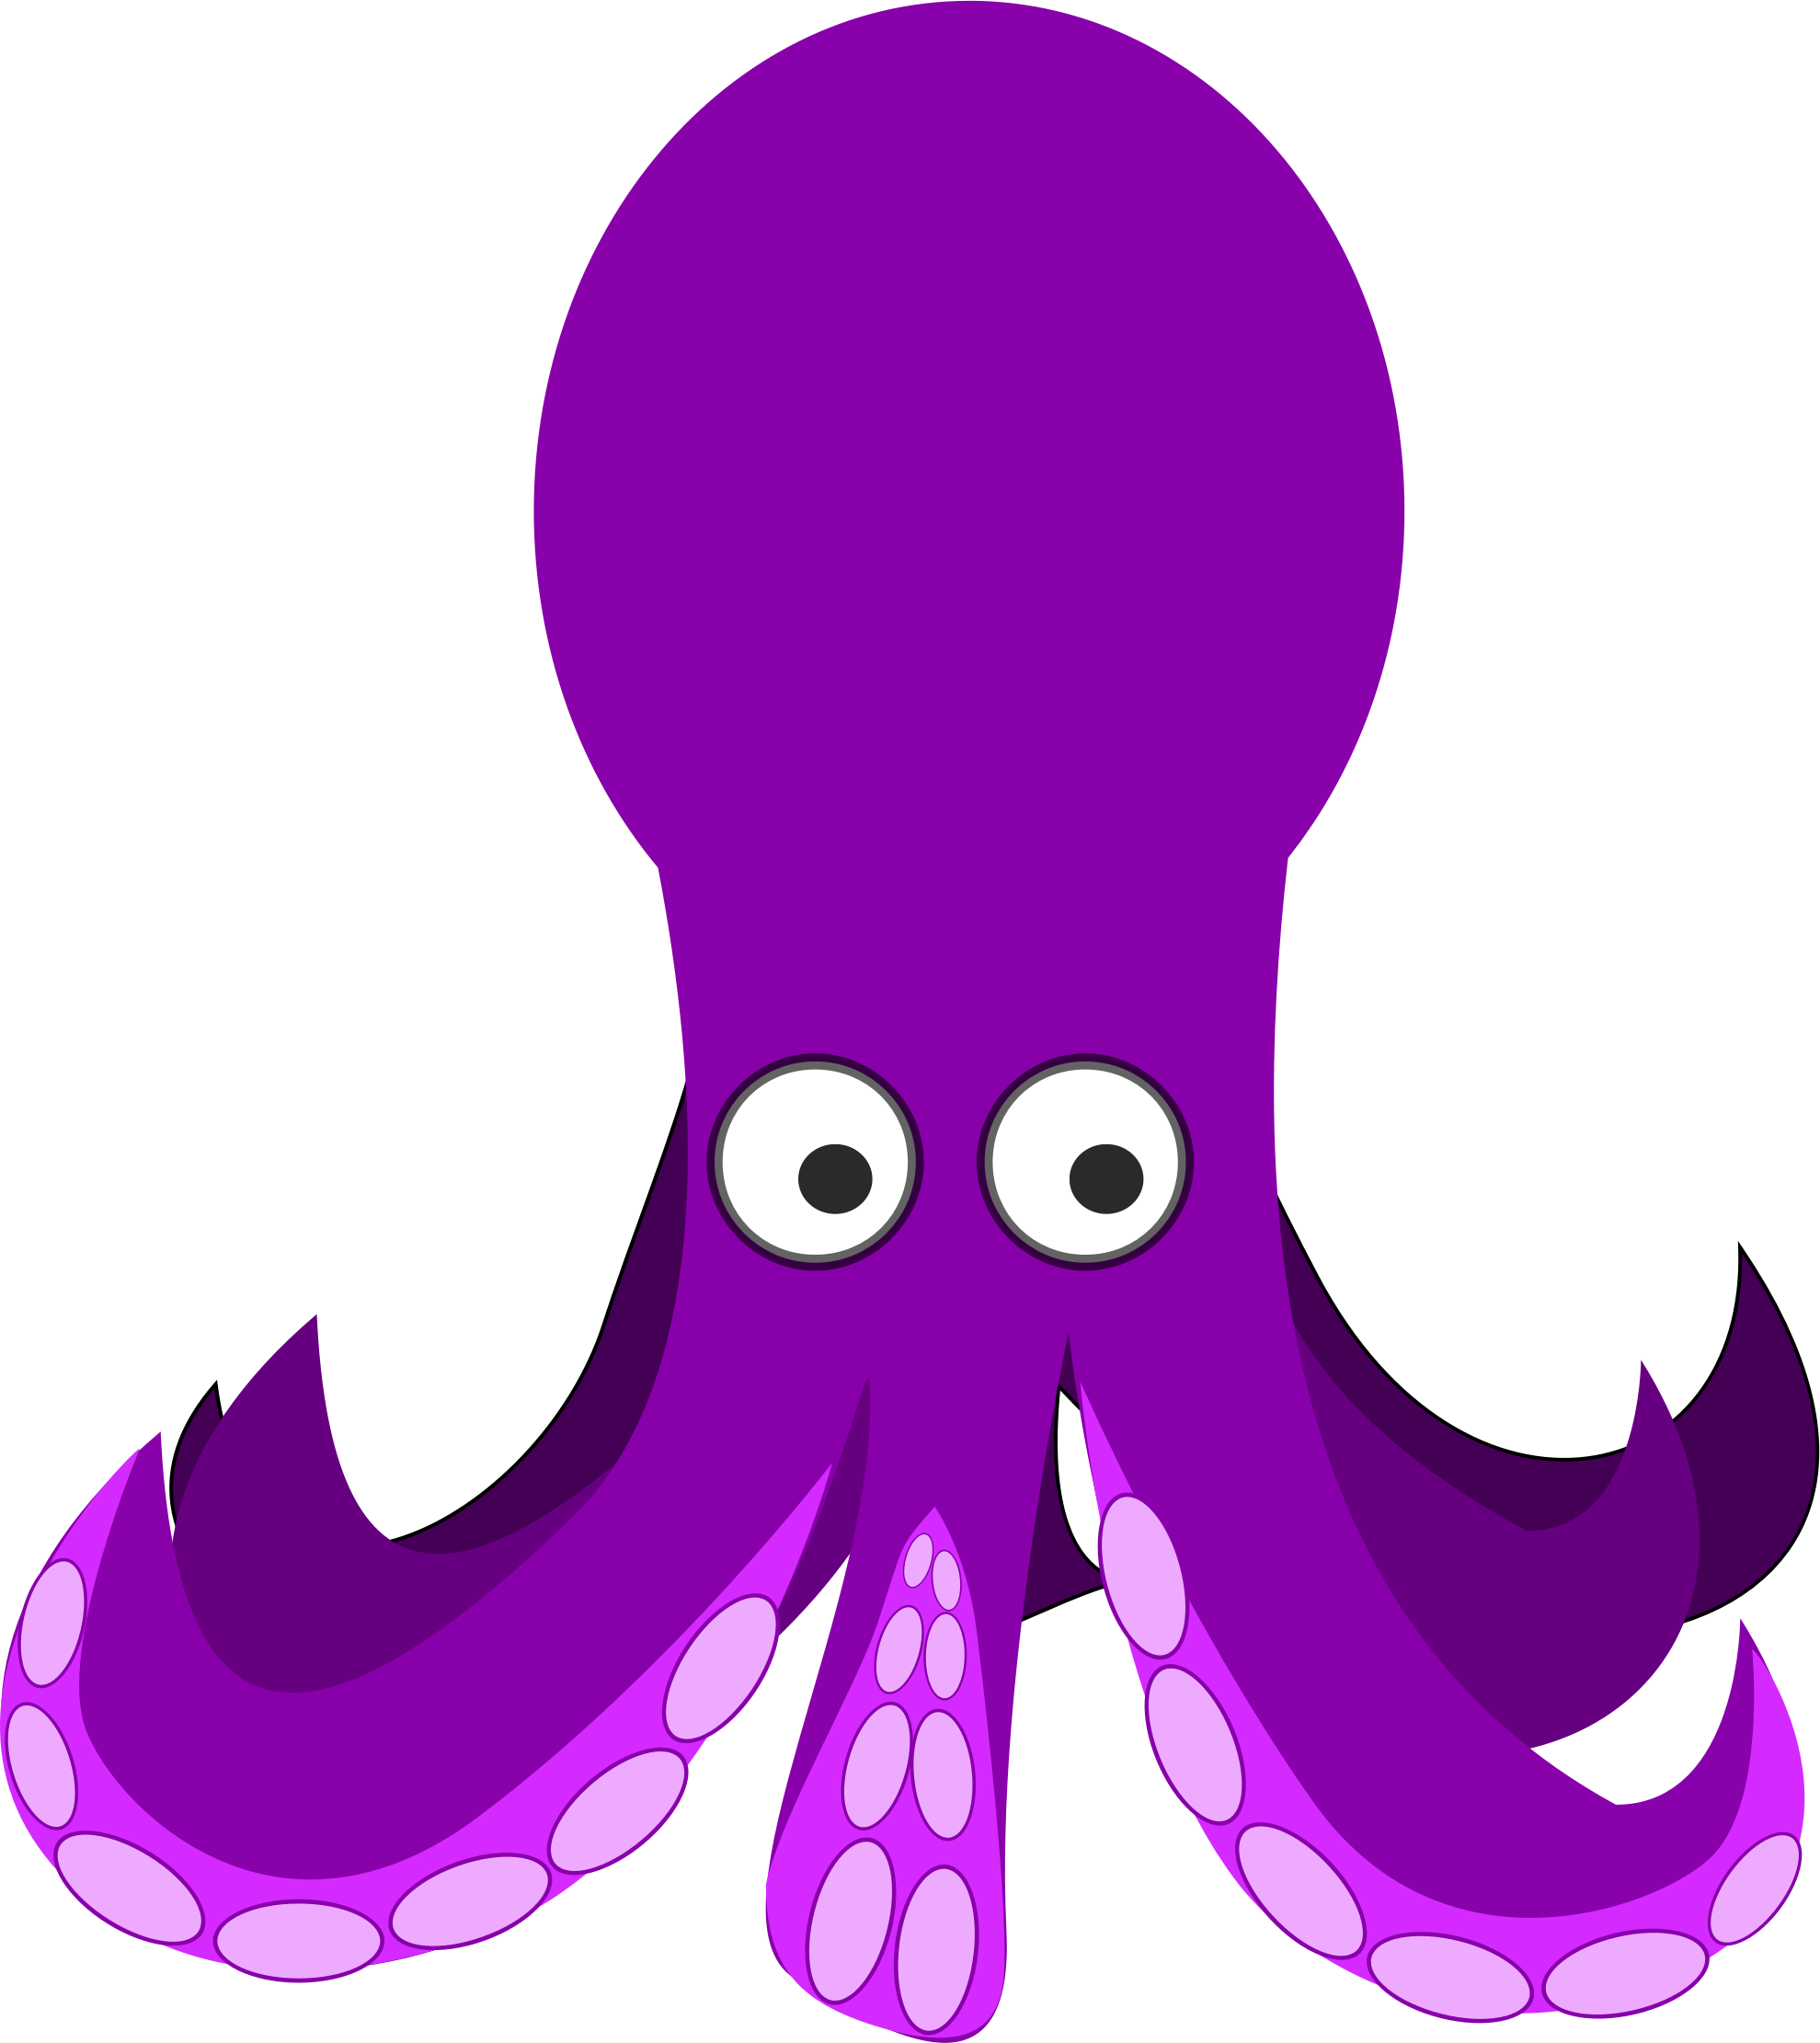 Octopus small octopus